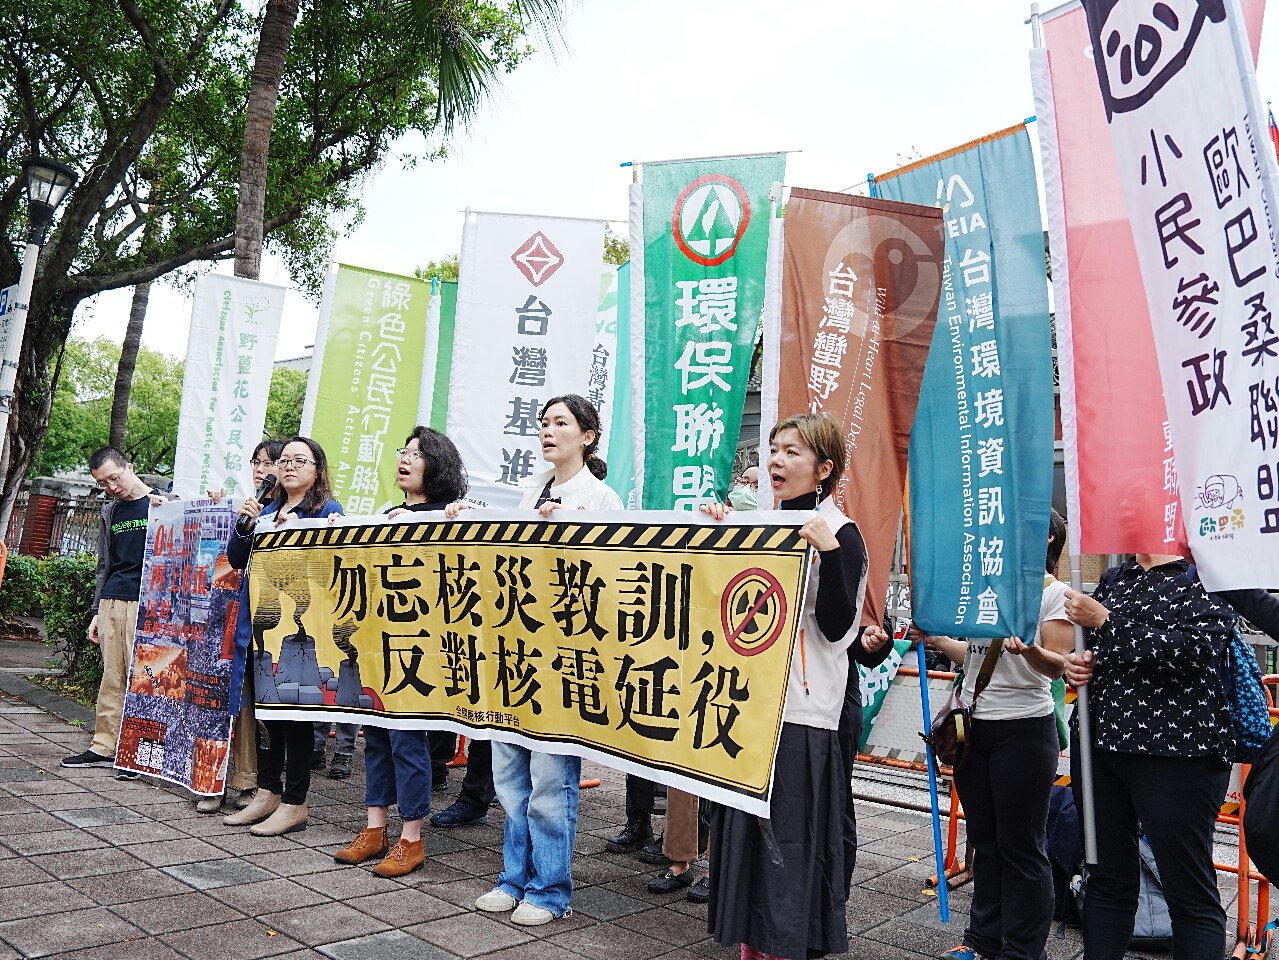 反對核電延役修法 民團宣告4/27將走上街頭抗議